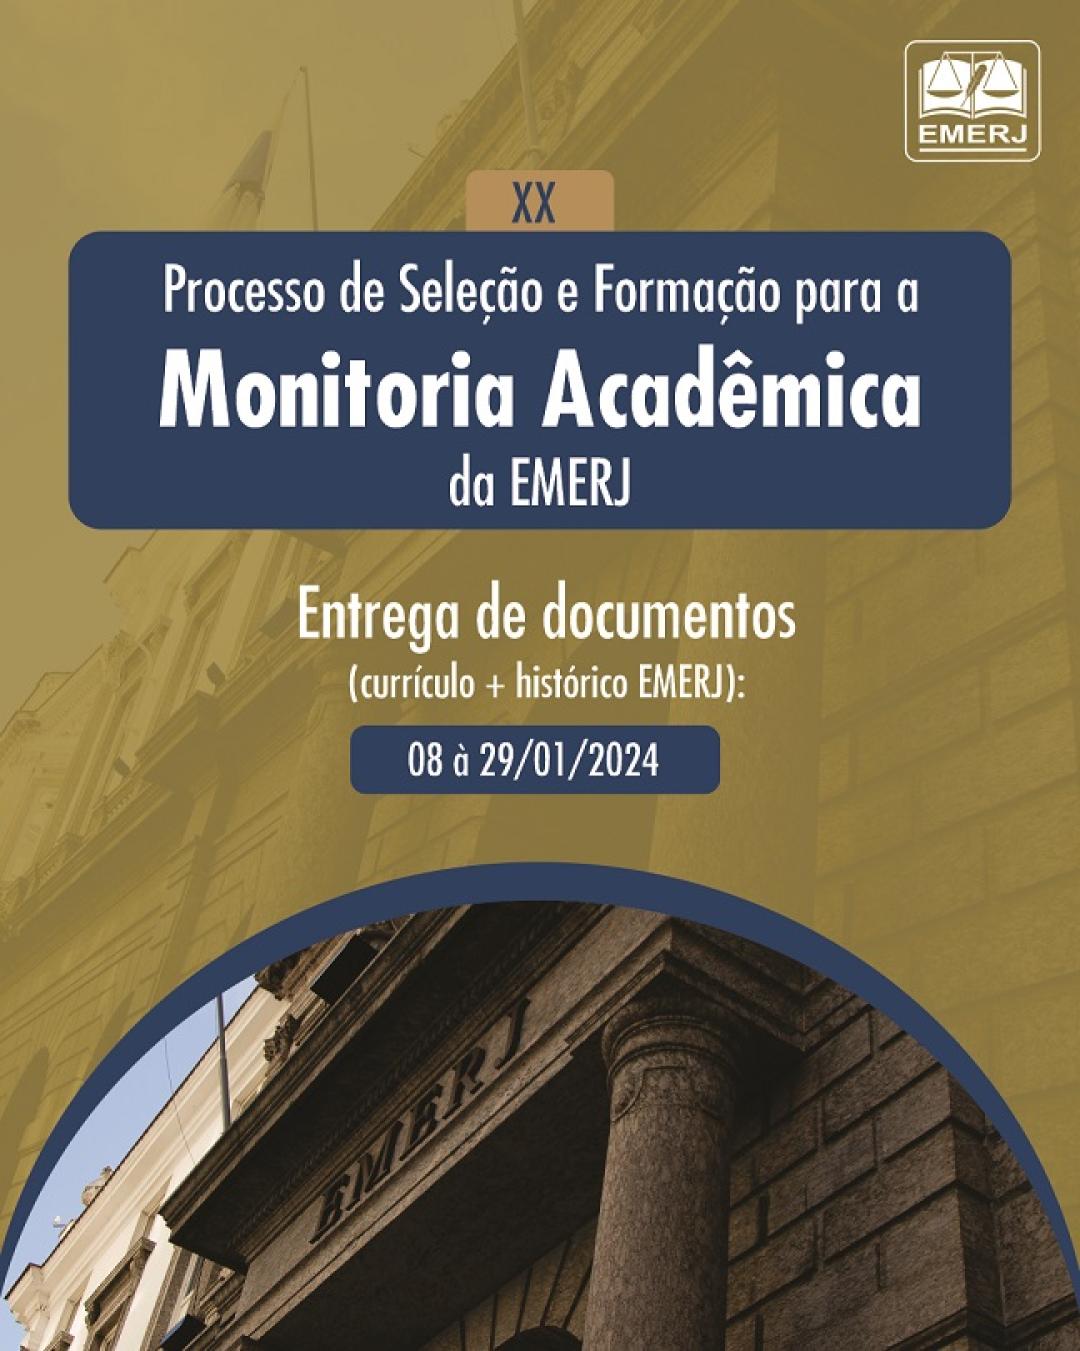 Imagem do banner principal do curso - XX Processo de Seleção e Formação para a Monitoria Acadêmica da EMERJ